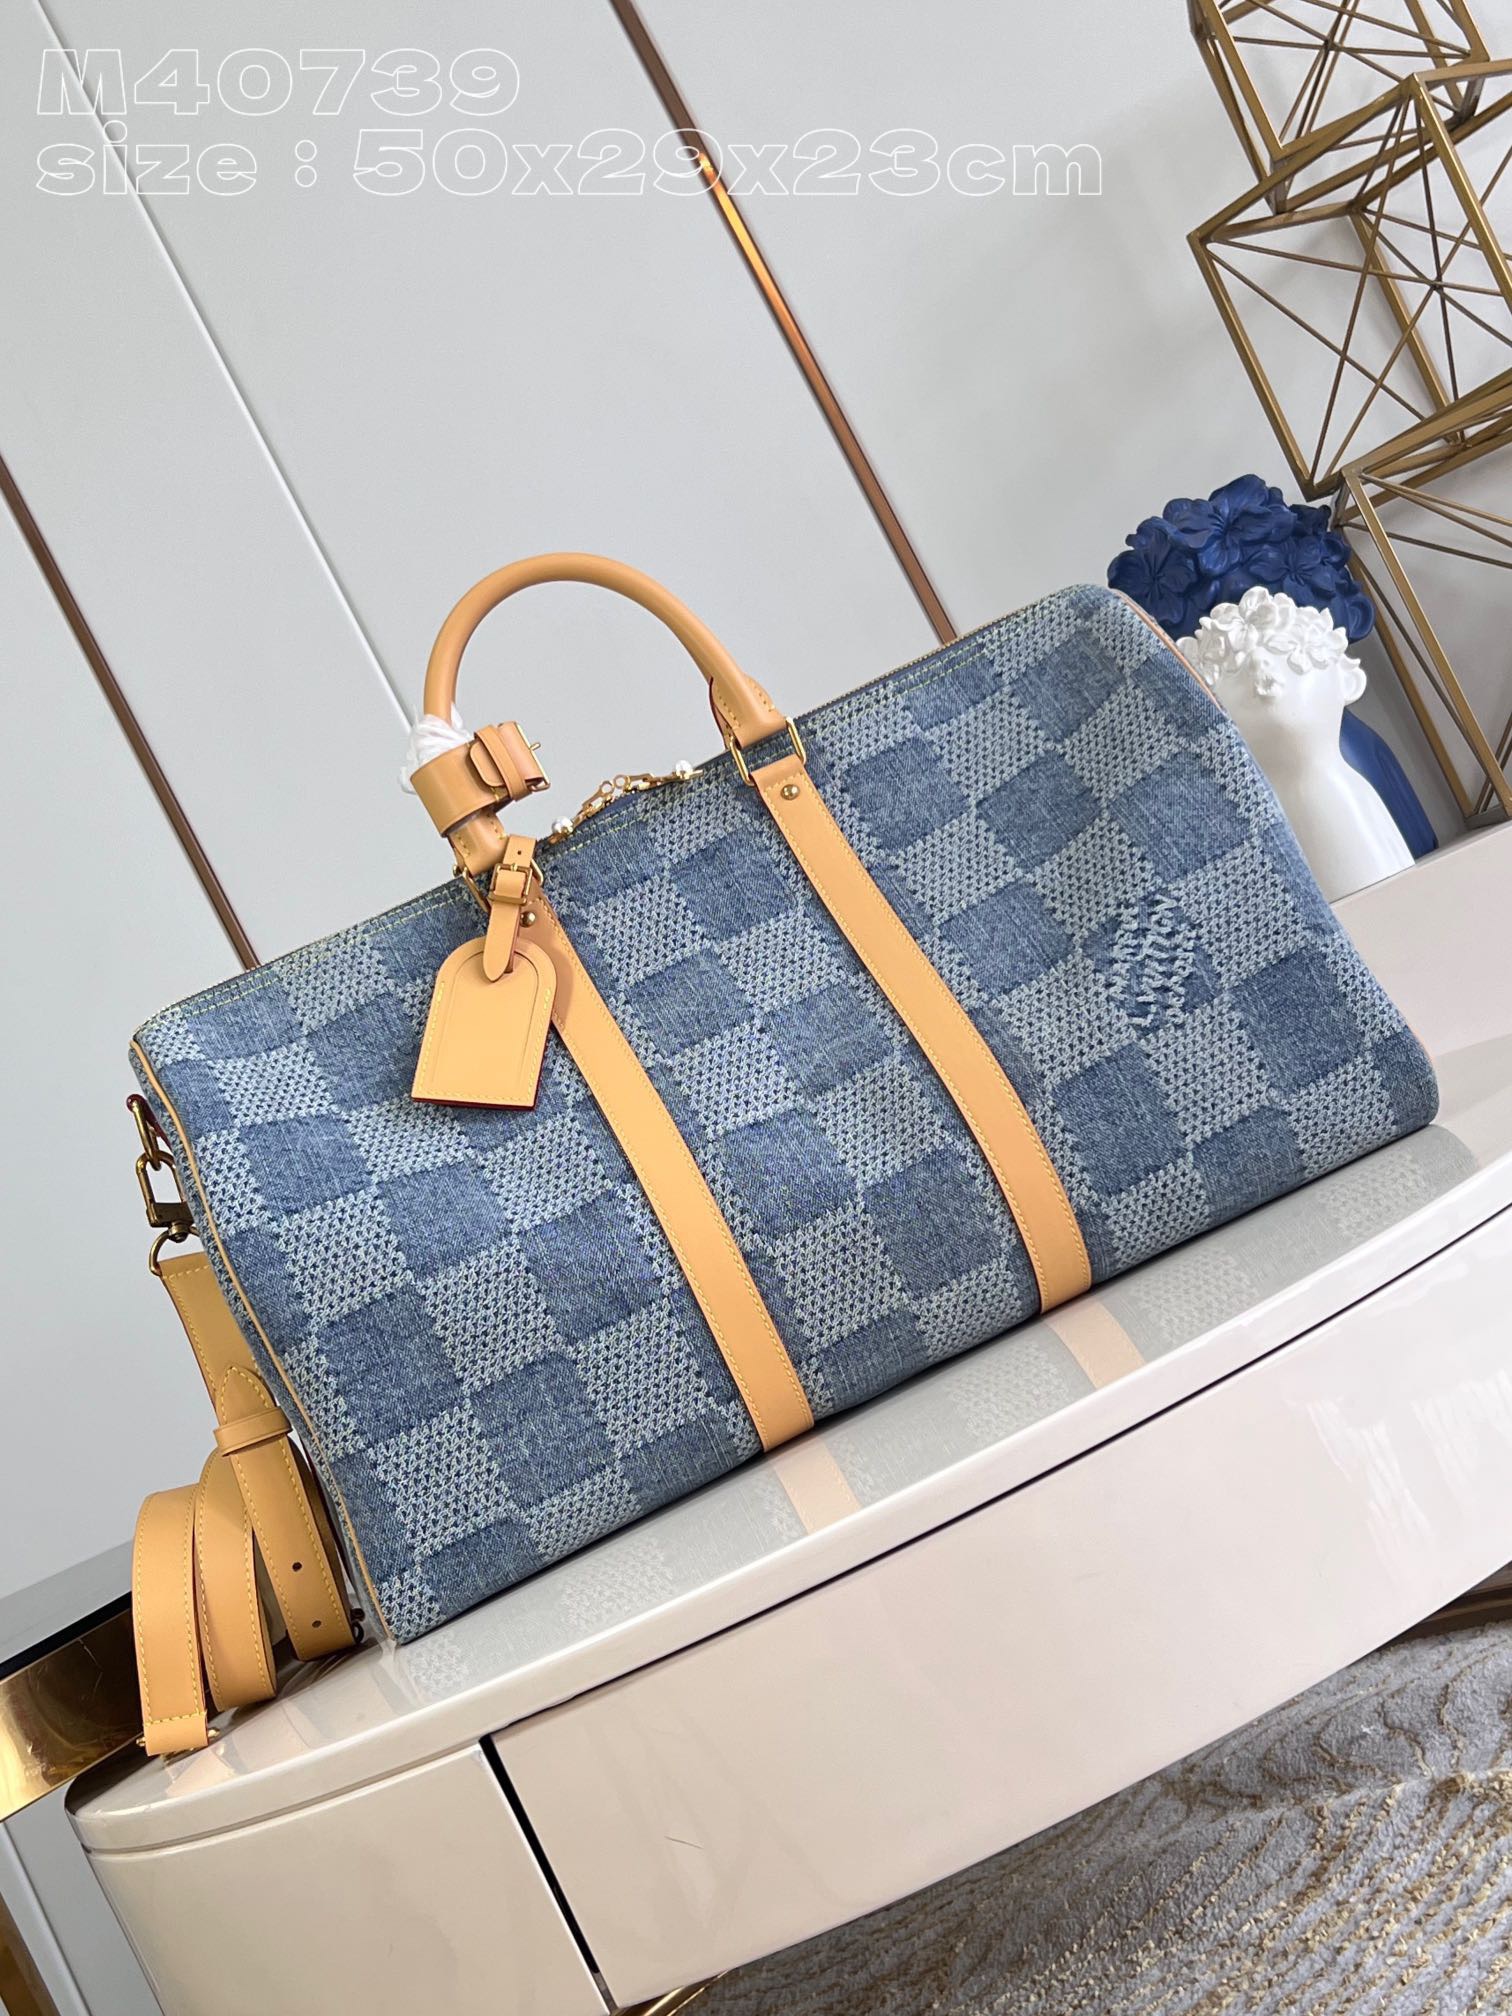 Louis Vuitton LV Keepall Bolsos de viaje Blanco Lona Algodón bruto azul Colección de verano M40739